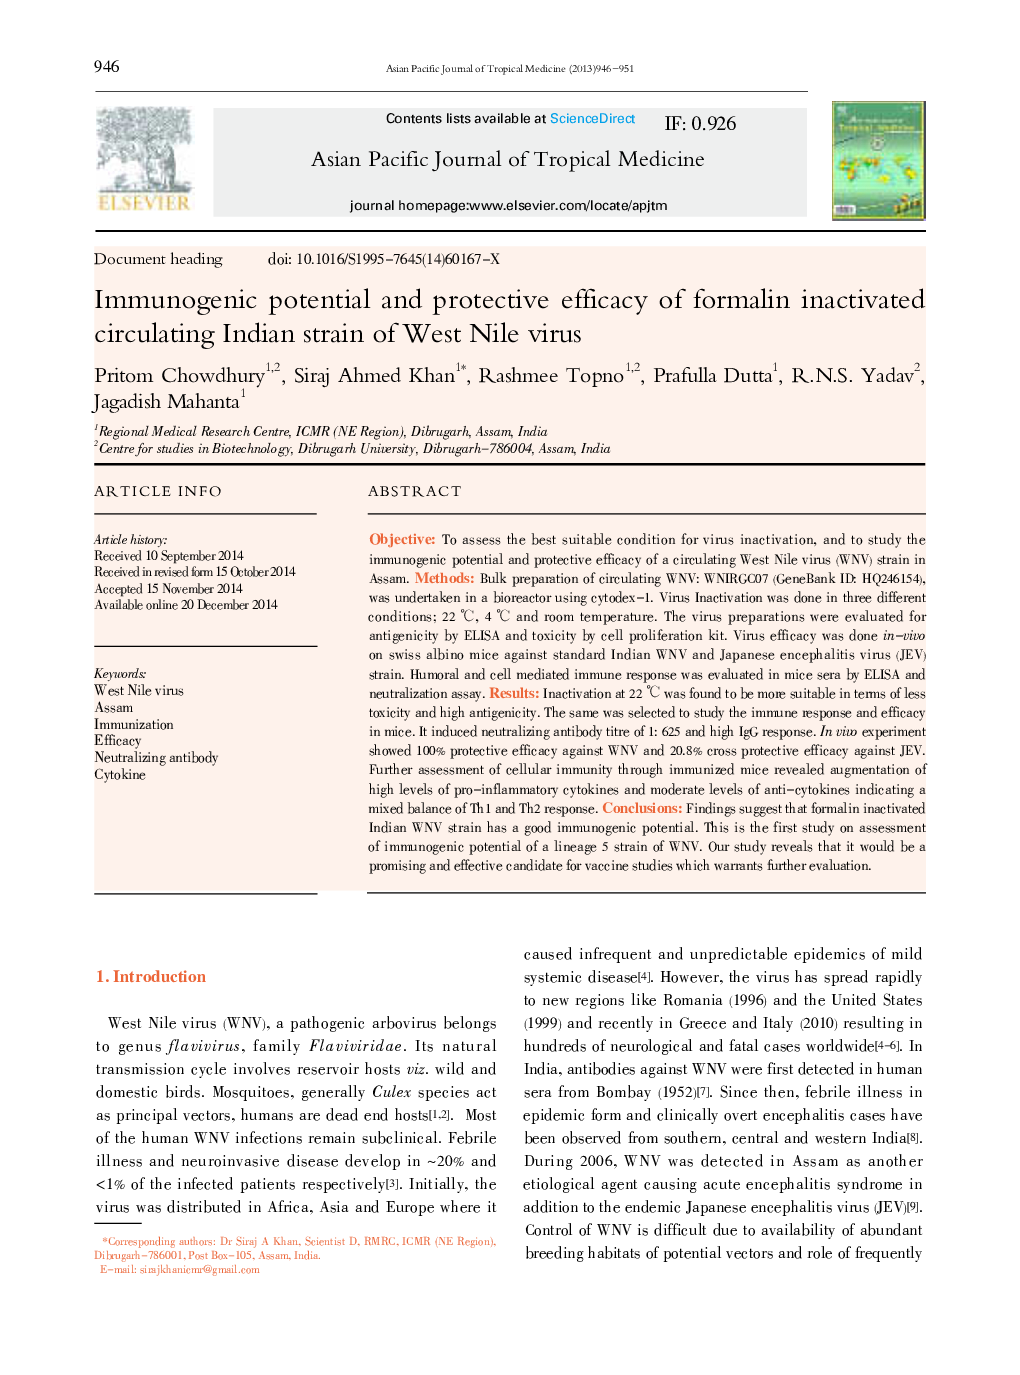 پتانسیل ایمنی و اثربخشی محافظت از فرمولین غیرفعال شده سلول سرطانی هندی ویروس غرب نیل 